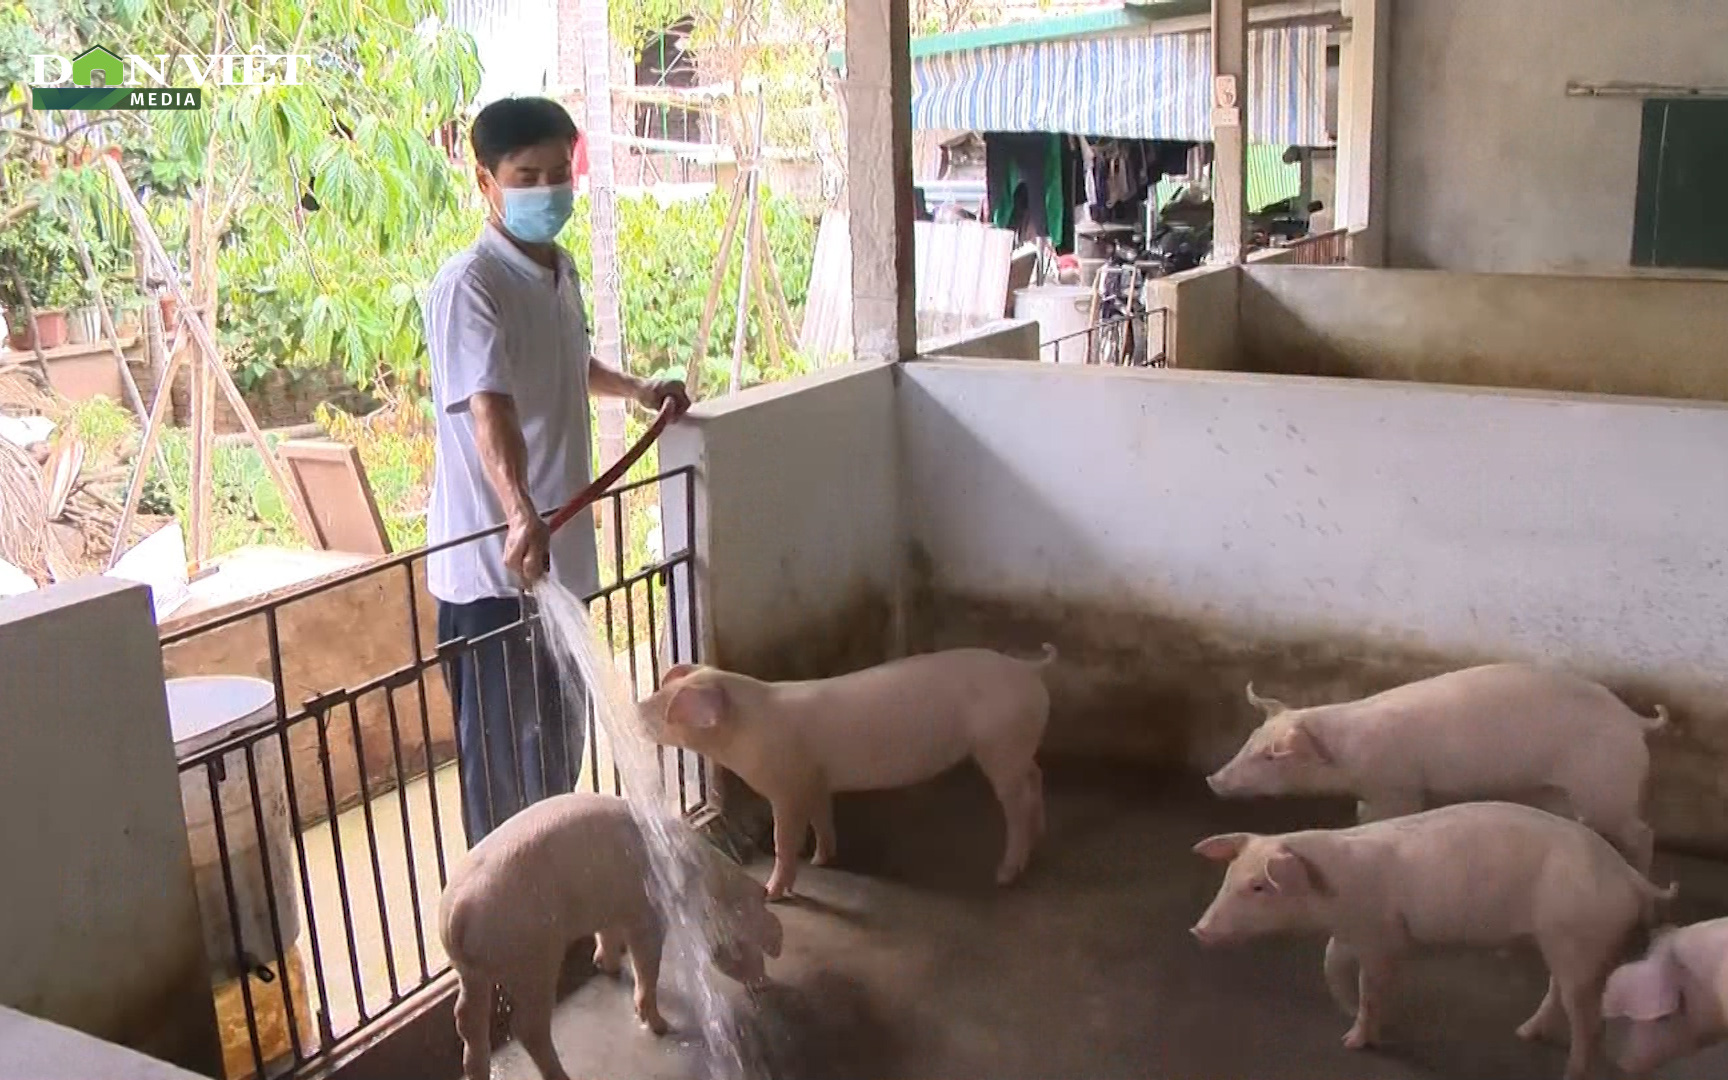 Giá thịt lợn giảm sâu, người chăn nuôi lợn đứng trước nguy cơ thua lỗ